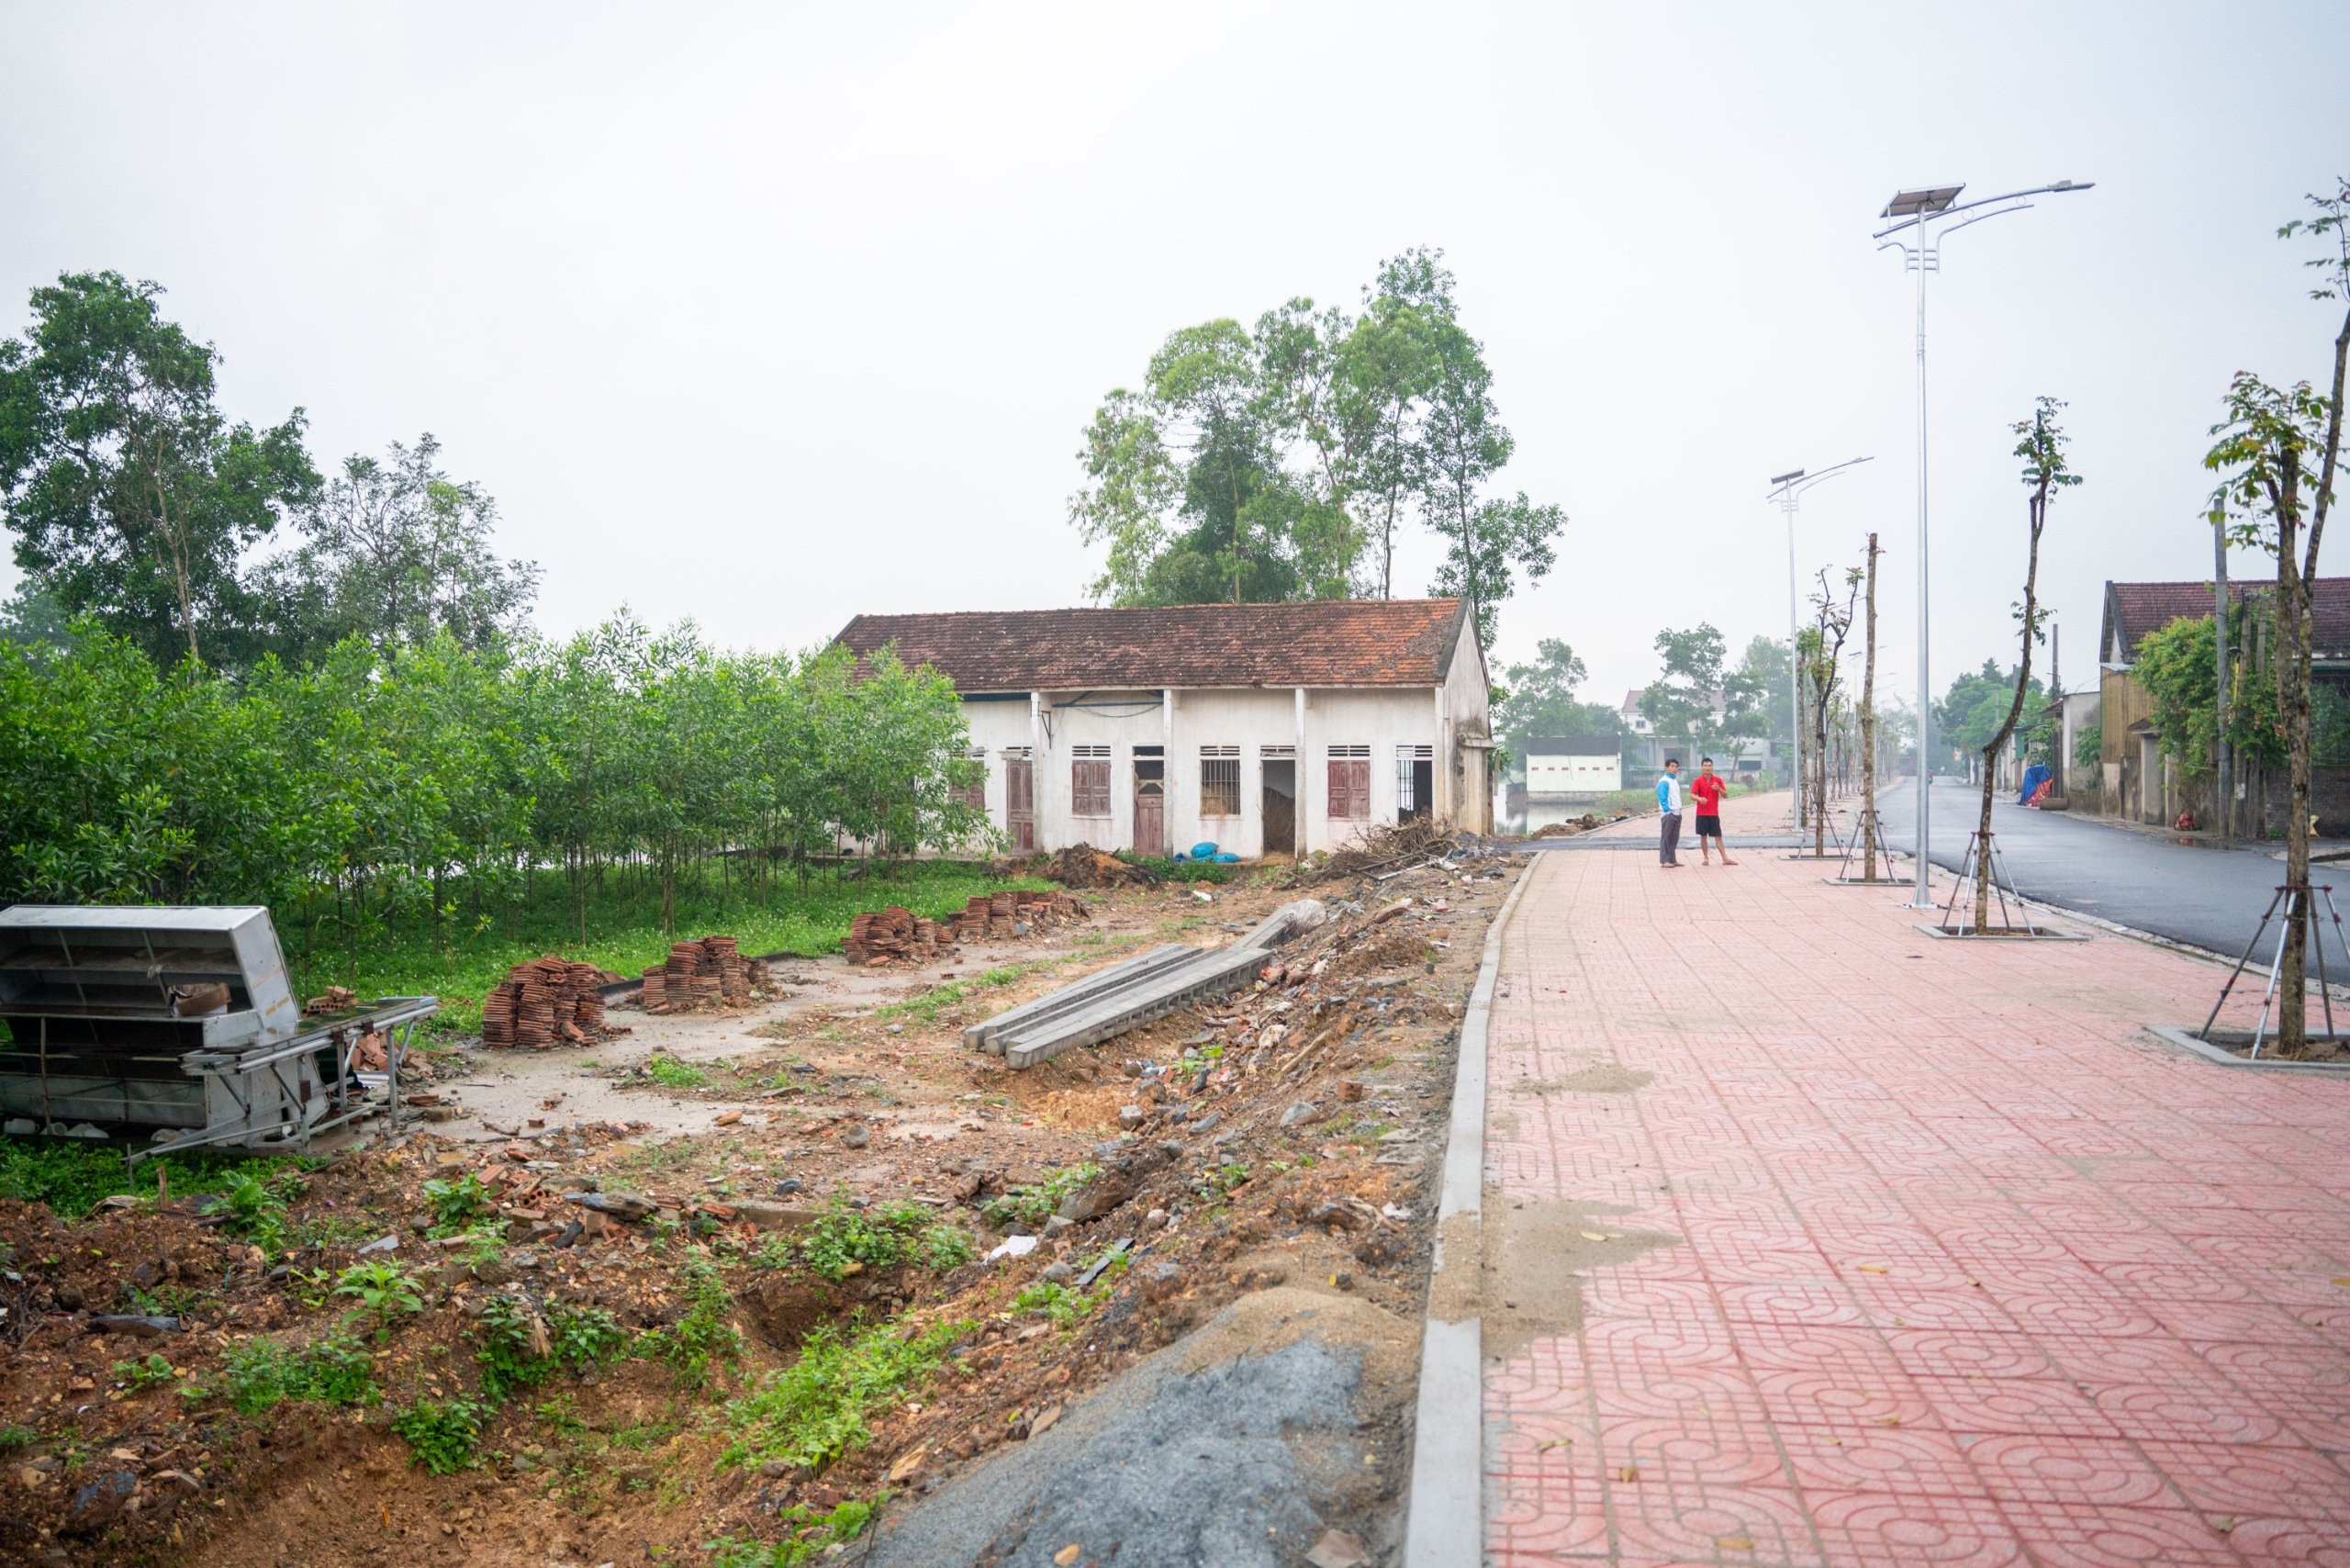 BNA_Khu đất được quy hoạch xây dựng làng nghề gắn với du lịch trải nghiệm tại xóm 6, xã Trù Sơn.jpg